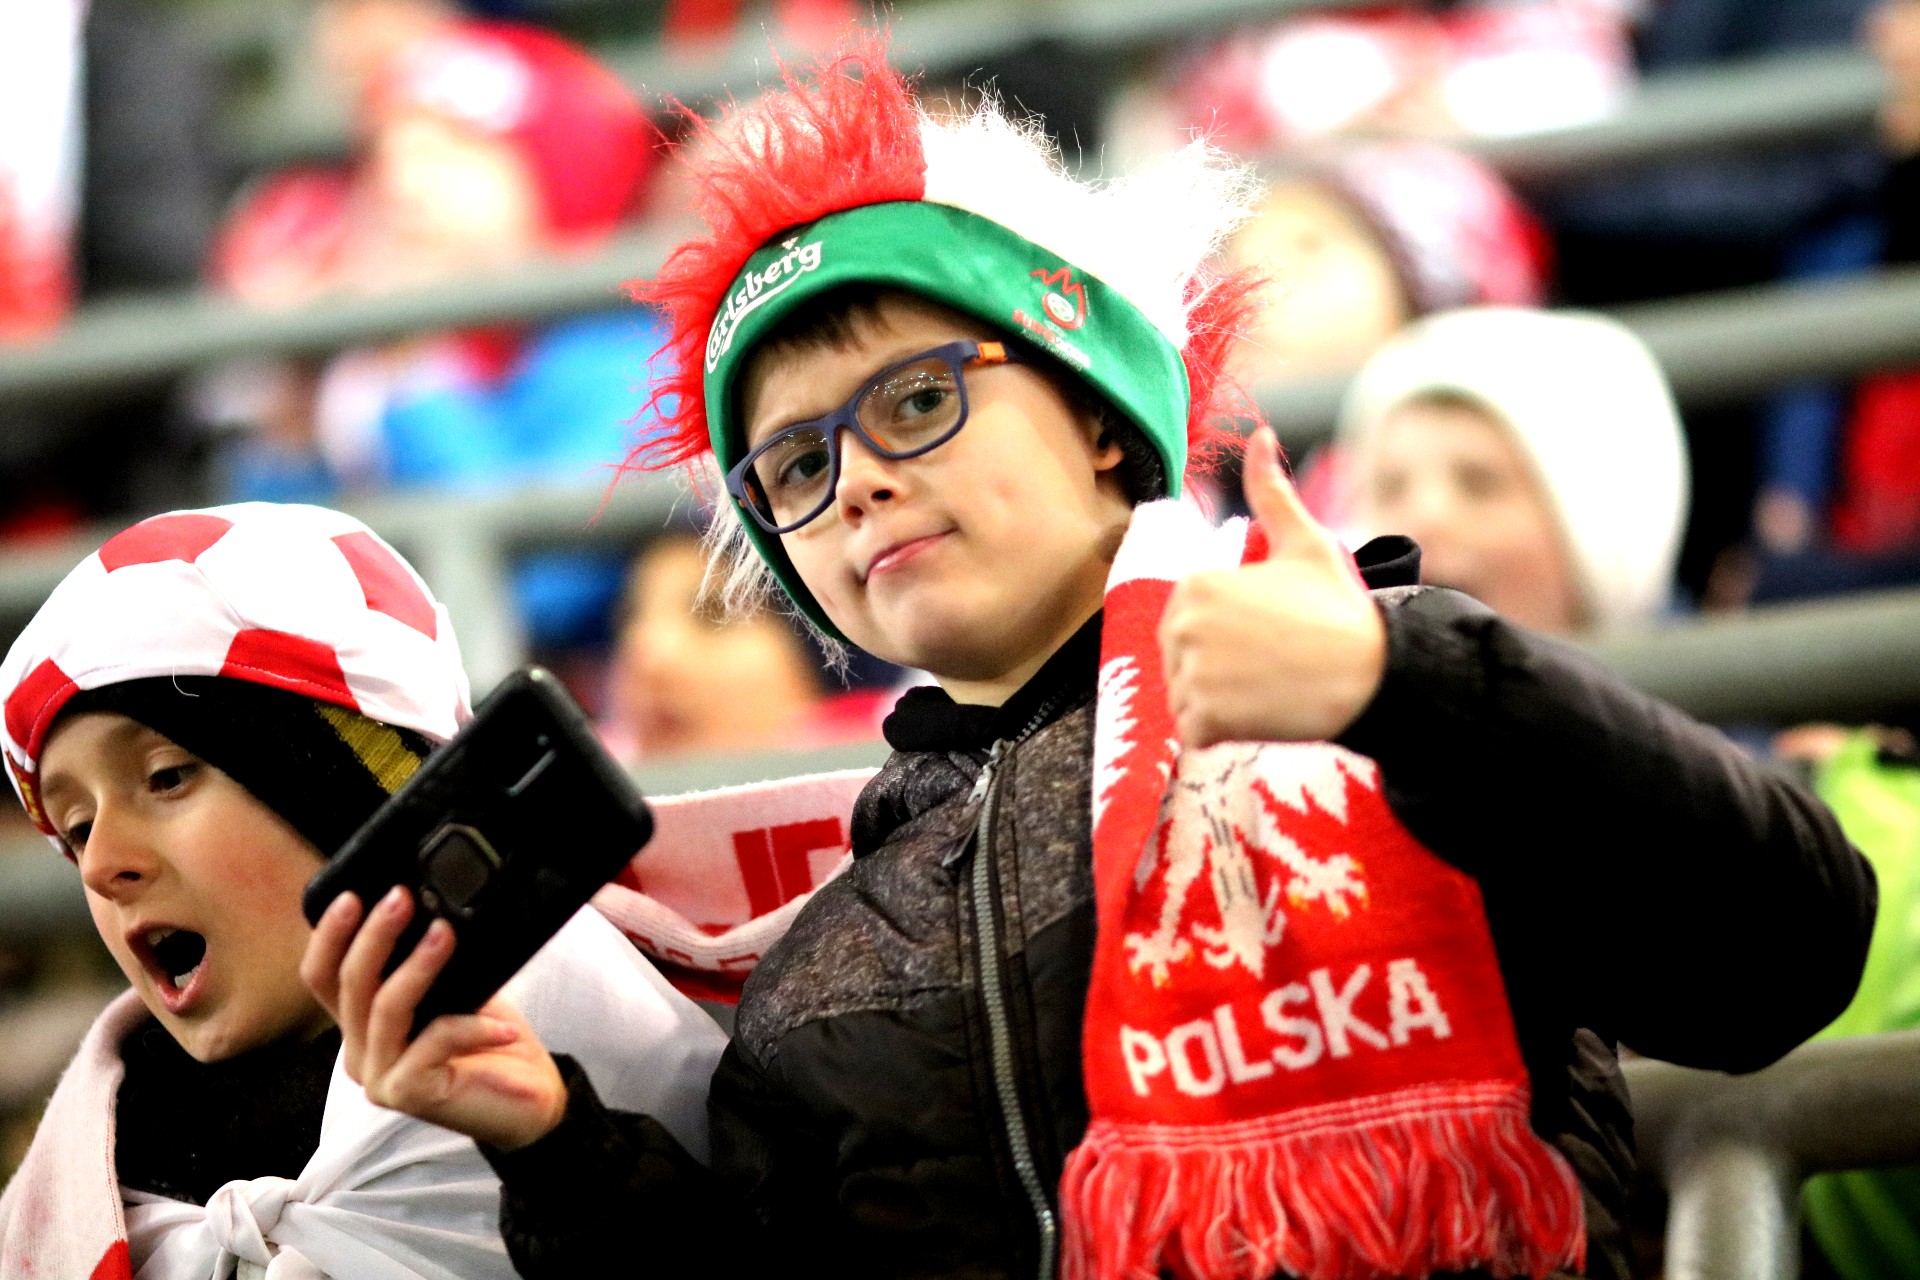 Chłopiec w okularach, czarnej kurtce, puchatej biało-czerwonej czapce z zielonym brzegiem i biało-czerwonym szaliku stoi na trybunie stadionu, w jednej ręce trzyma telefon a drugą pokazuje kciuk w górę.